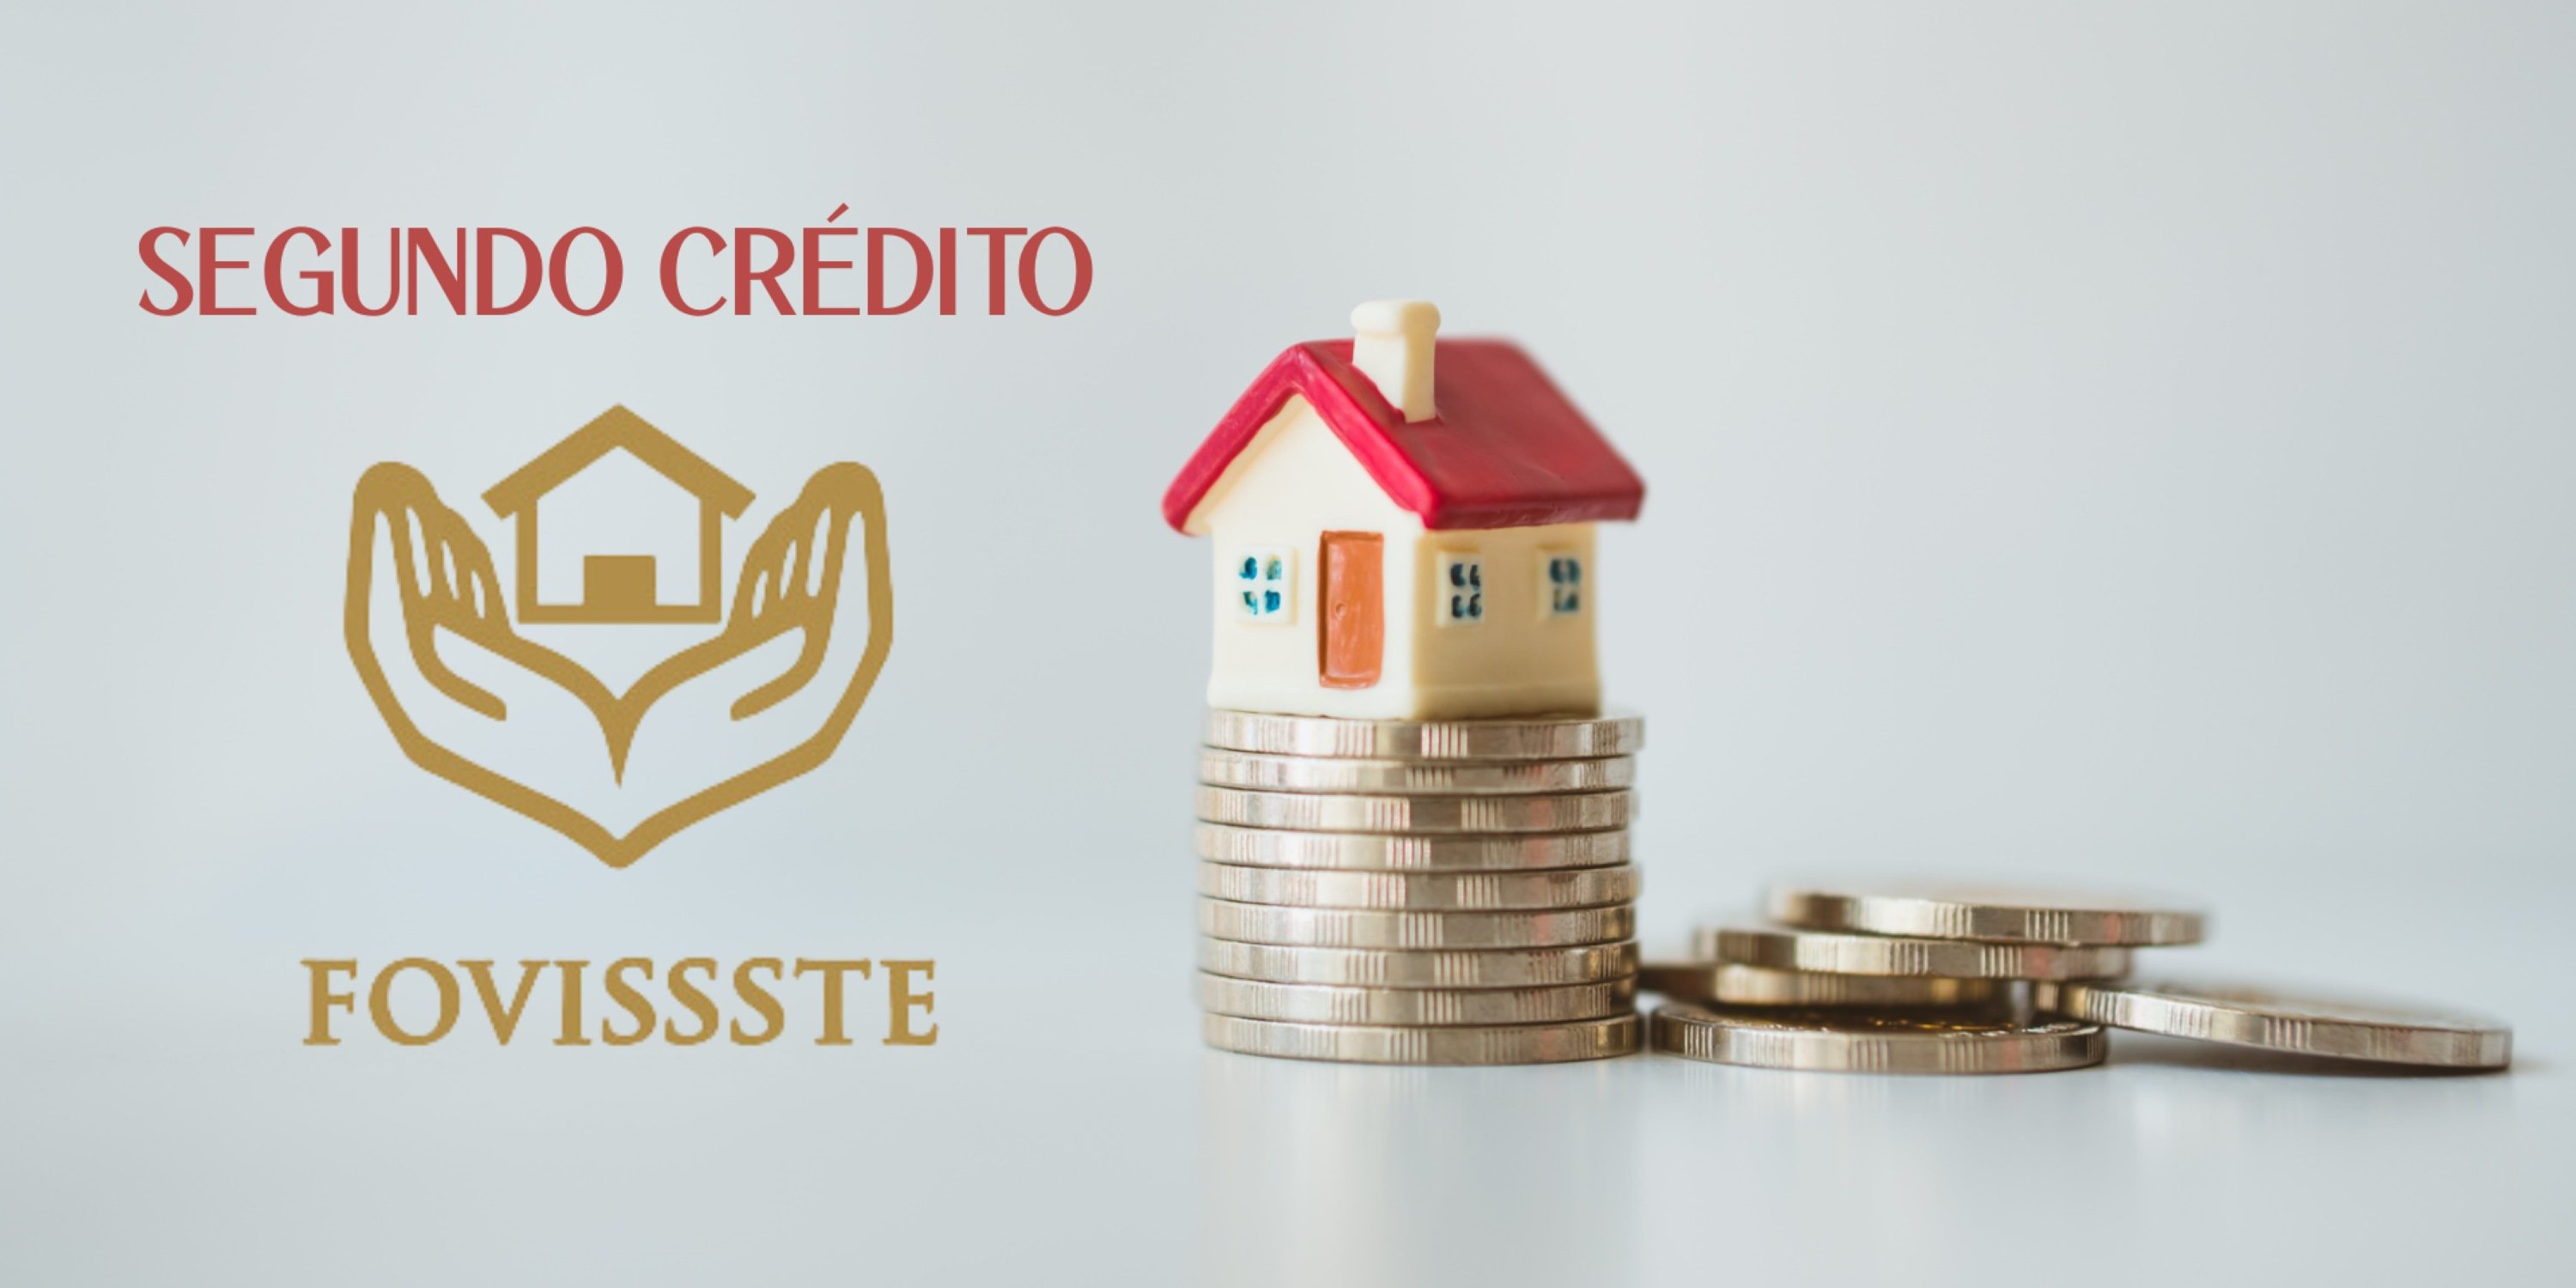 Obtén información sobre los requisitos necesarios para solicitar tu segundo crédito FOVISSSTE y aprovechar los beneficios que ofrece.